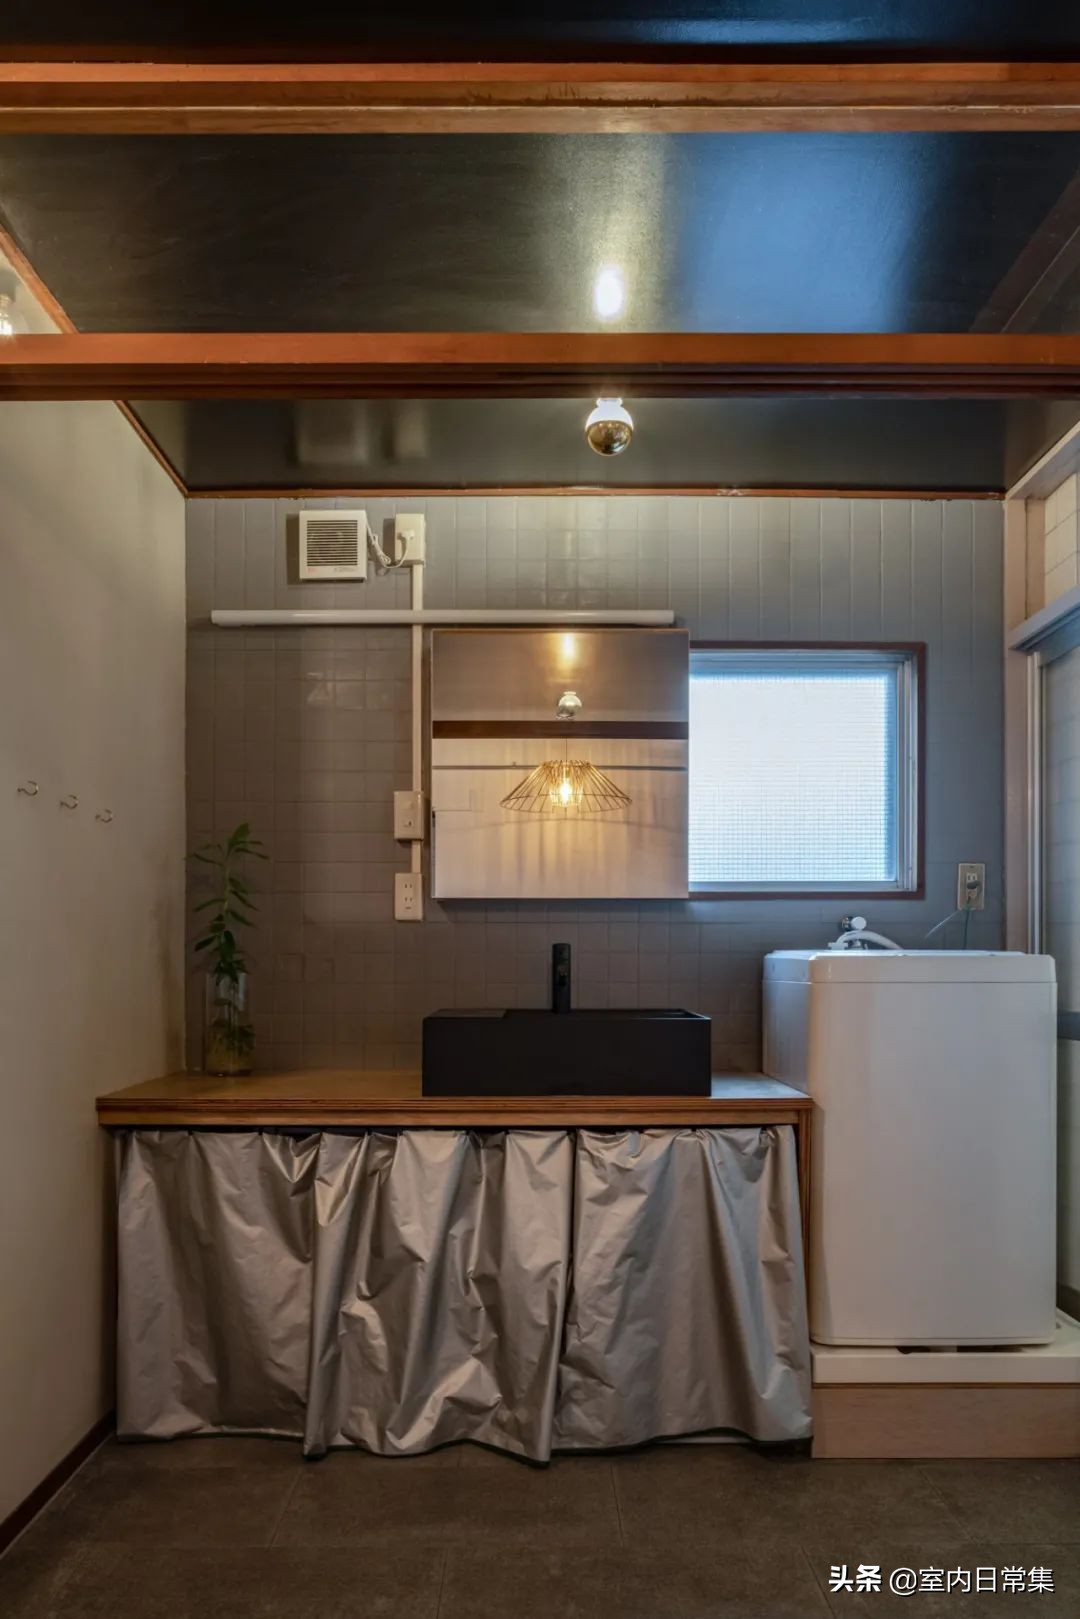 日本名古屋丨清水混泥土風夏日裏的清涼 室內日常集 Mdeditor